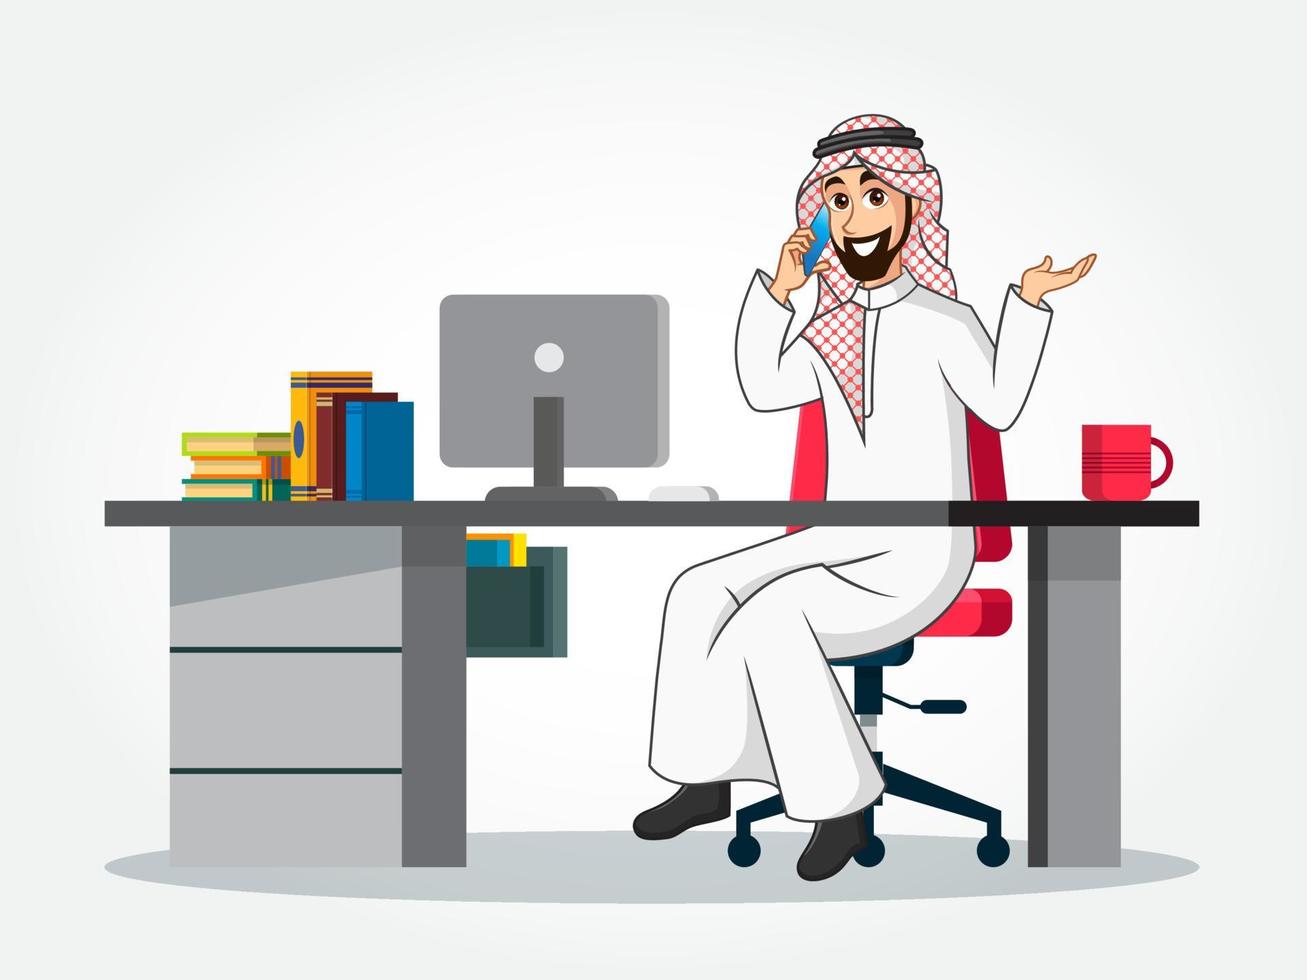 personagem de desenho animado do empresário árabe em roupas tradicionais, sentado em sua mesa, falando no telefone inteligente vetor